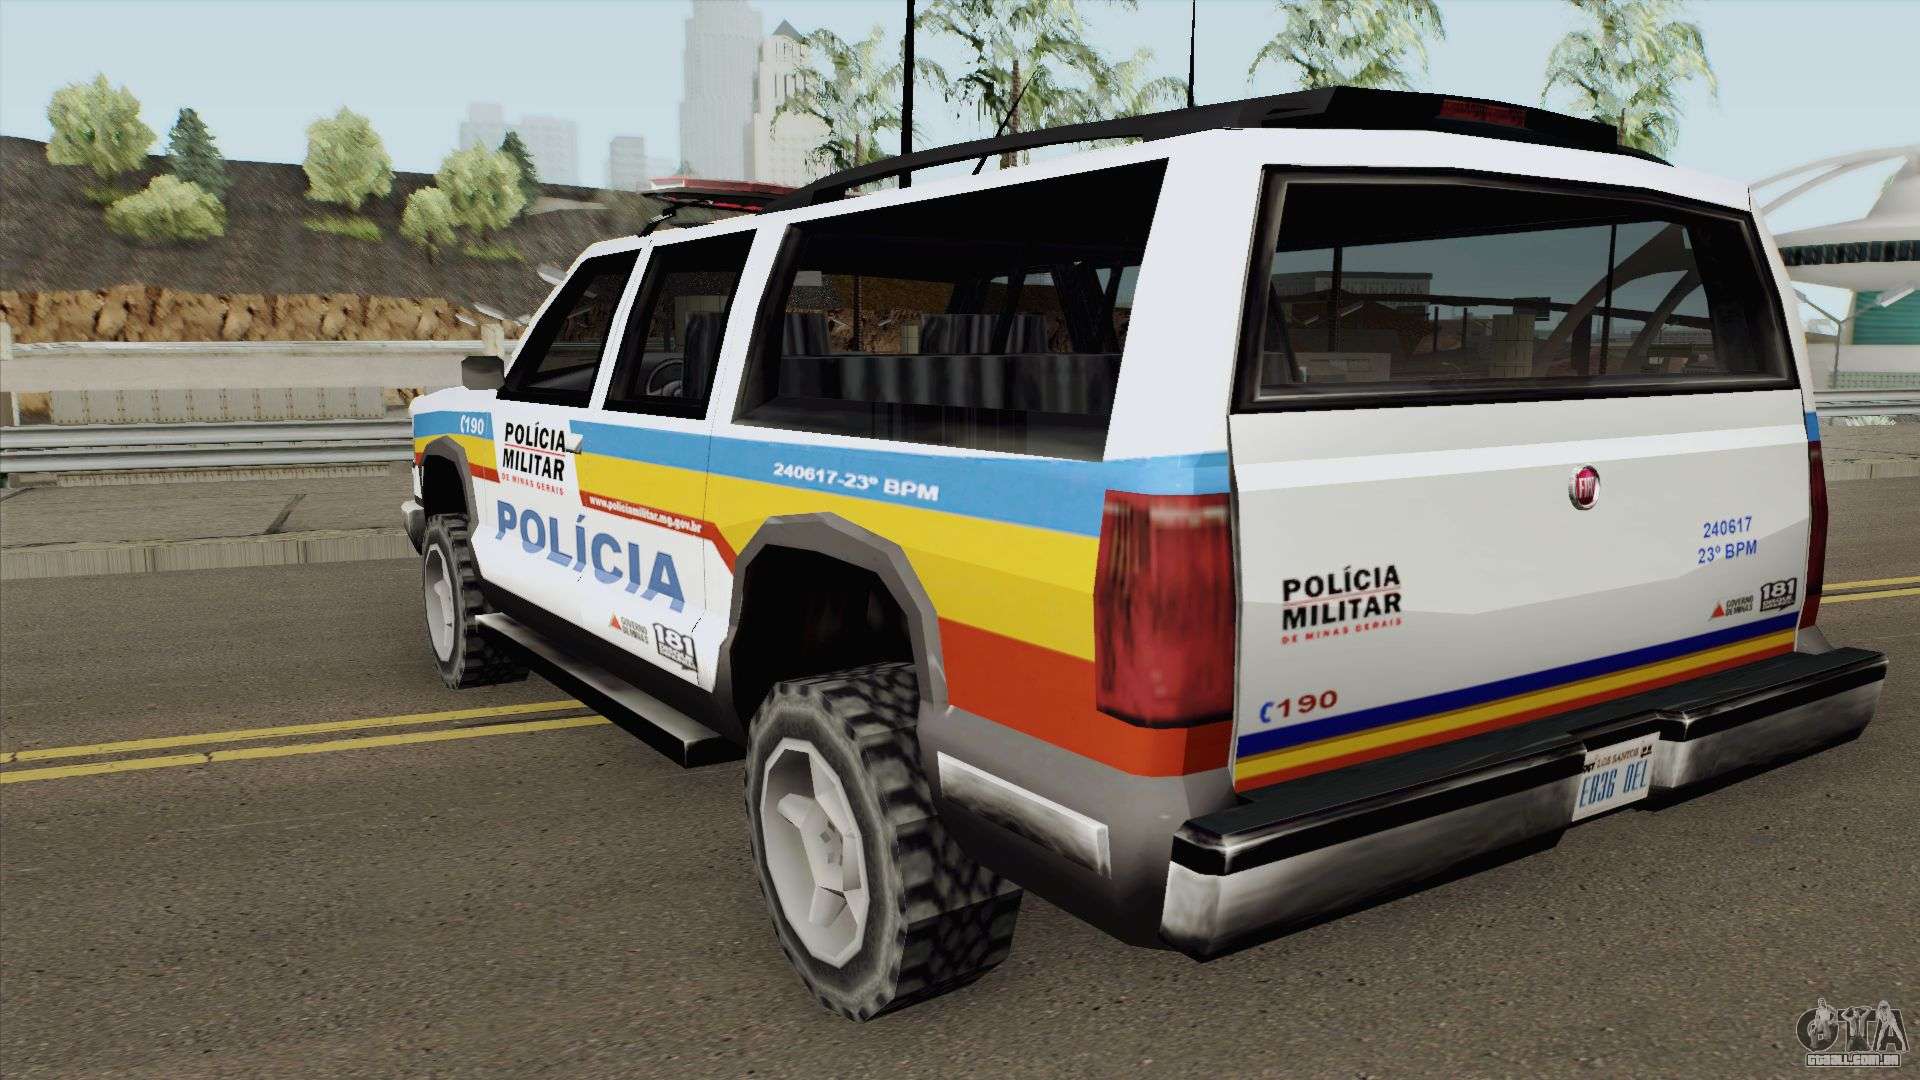 CODIGO Remover Policia GTA San Andreas PC / MANHA Remover Policia GTA San  Andeas PC - Fabinho Seco 